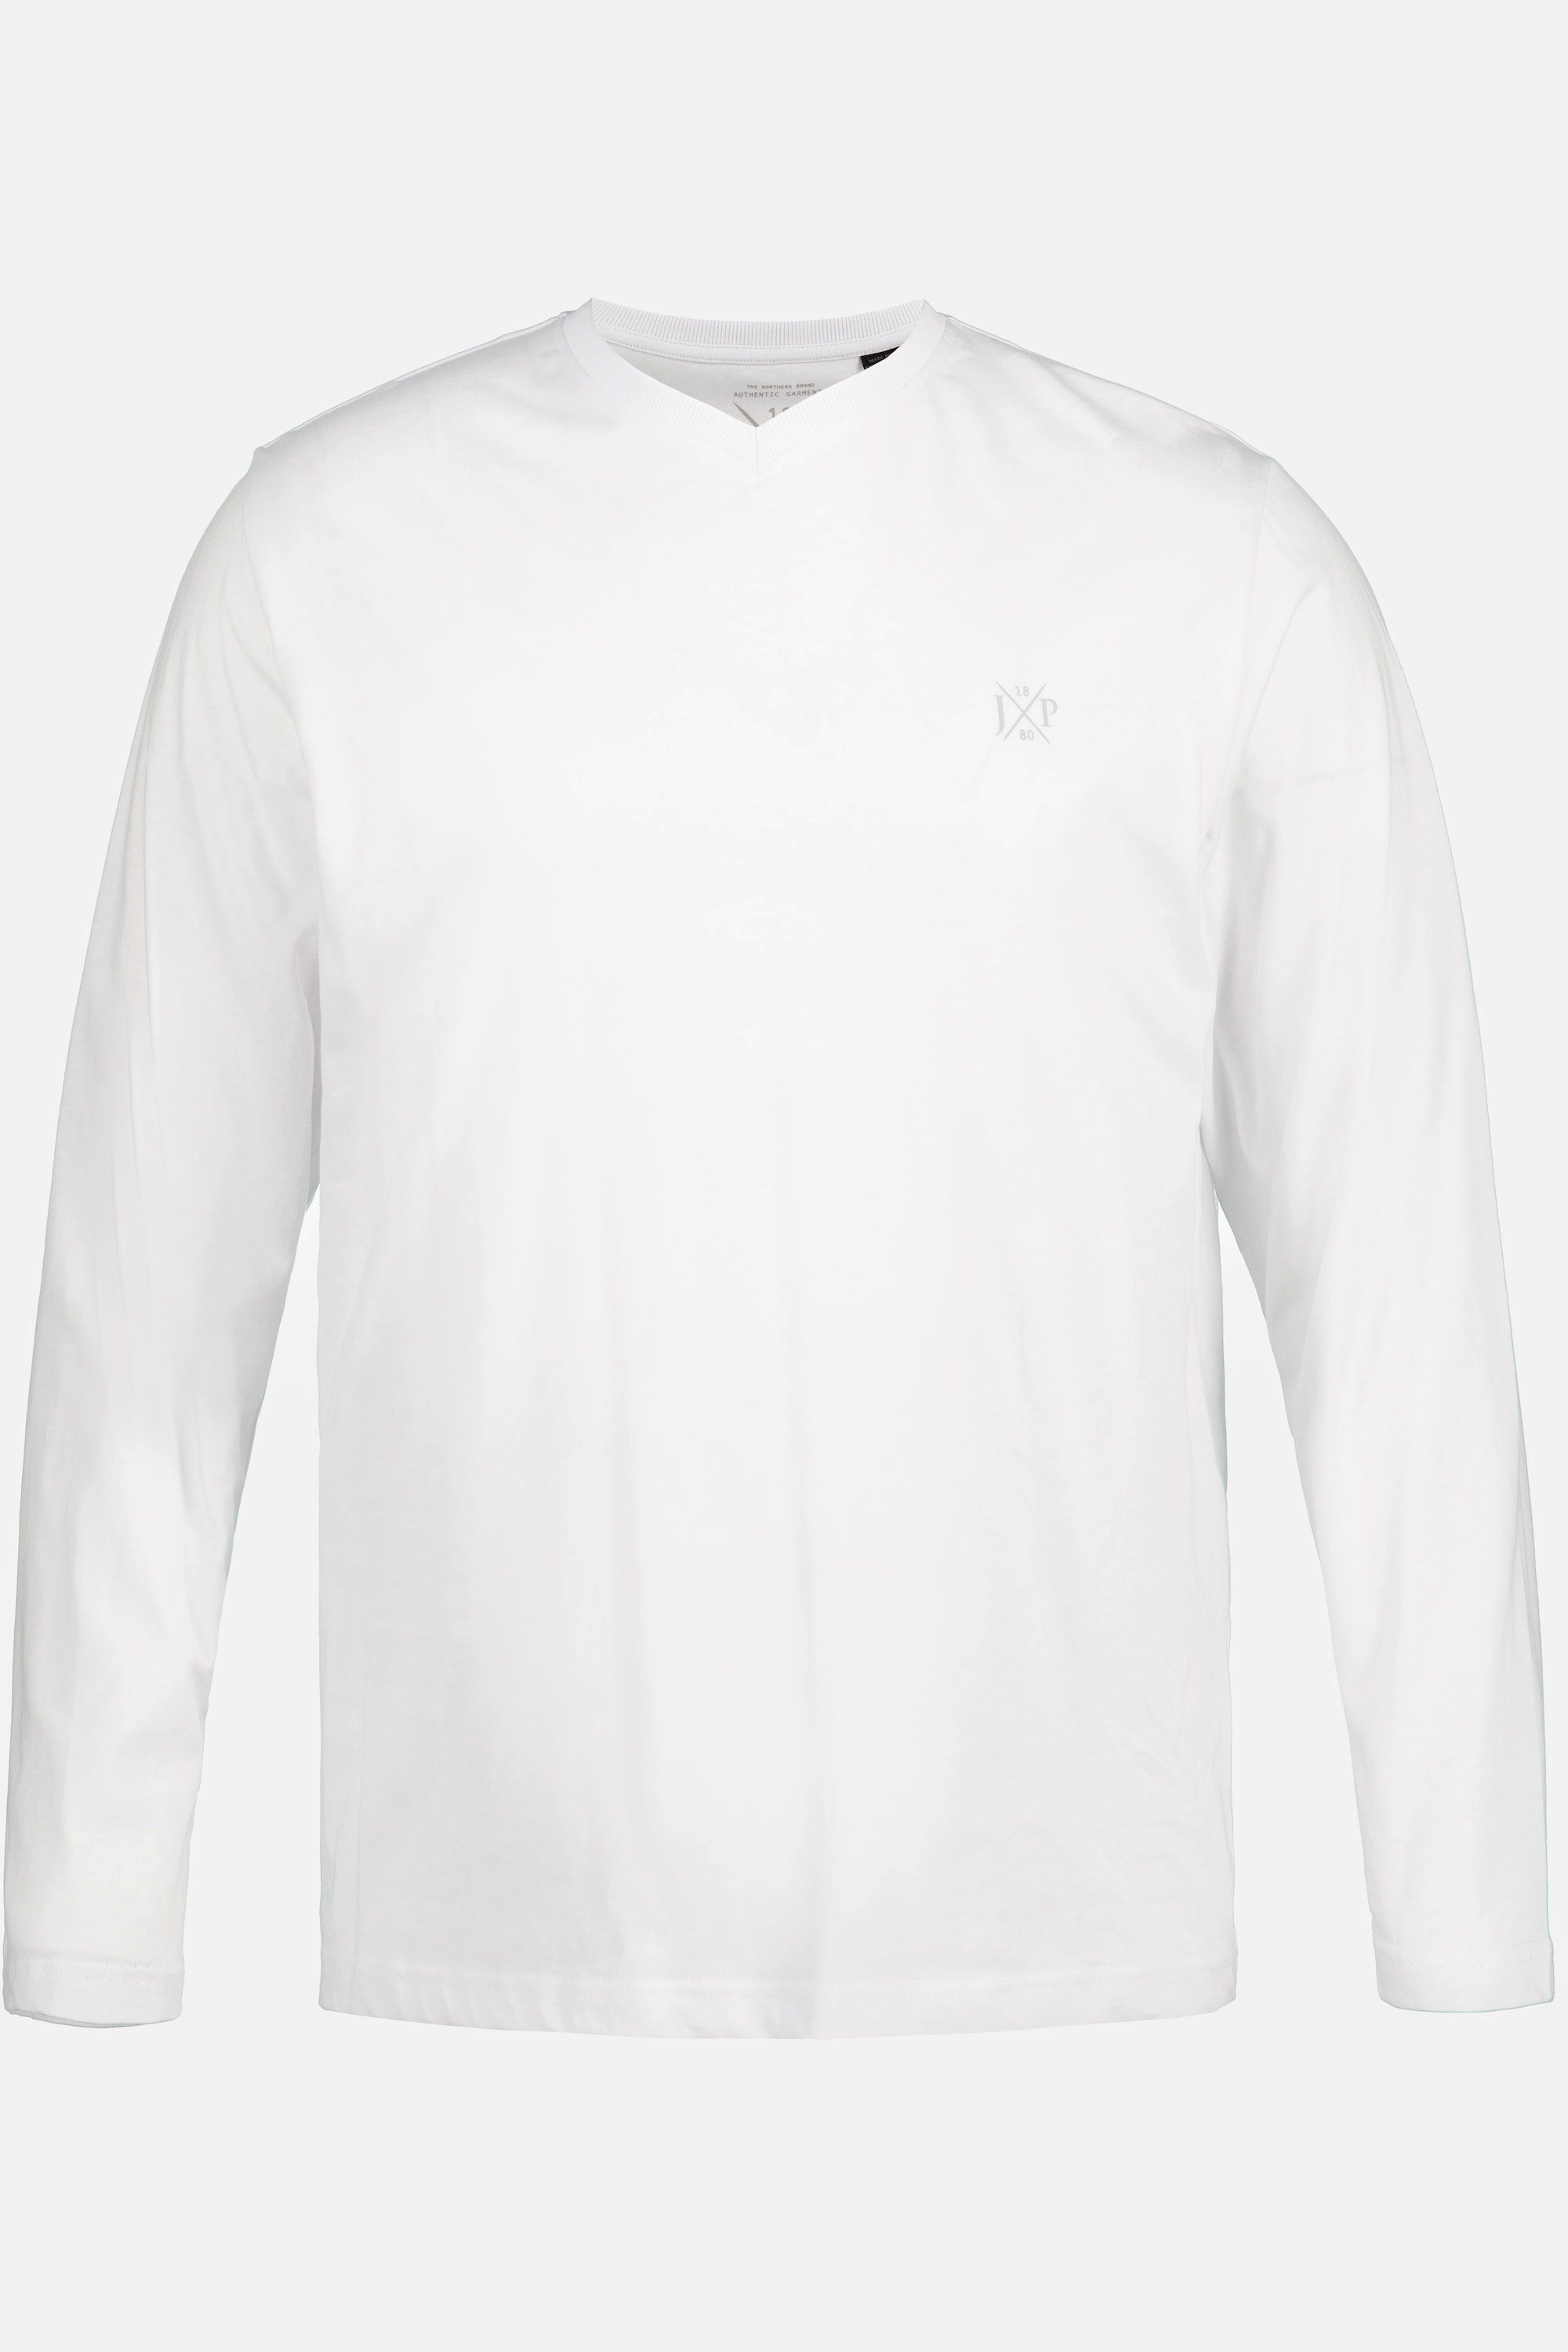 Langarmshirt XL 8 Langarm bis schneeweiß Basic V-Ausschnitt T-Shirt JP1880